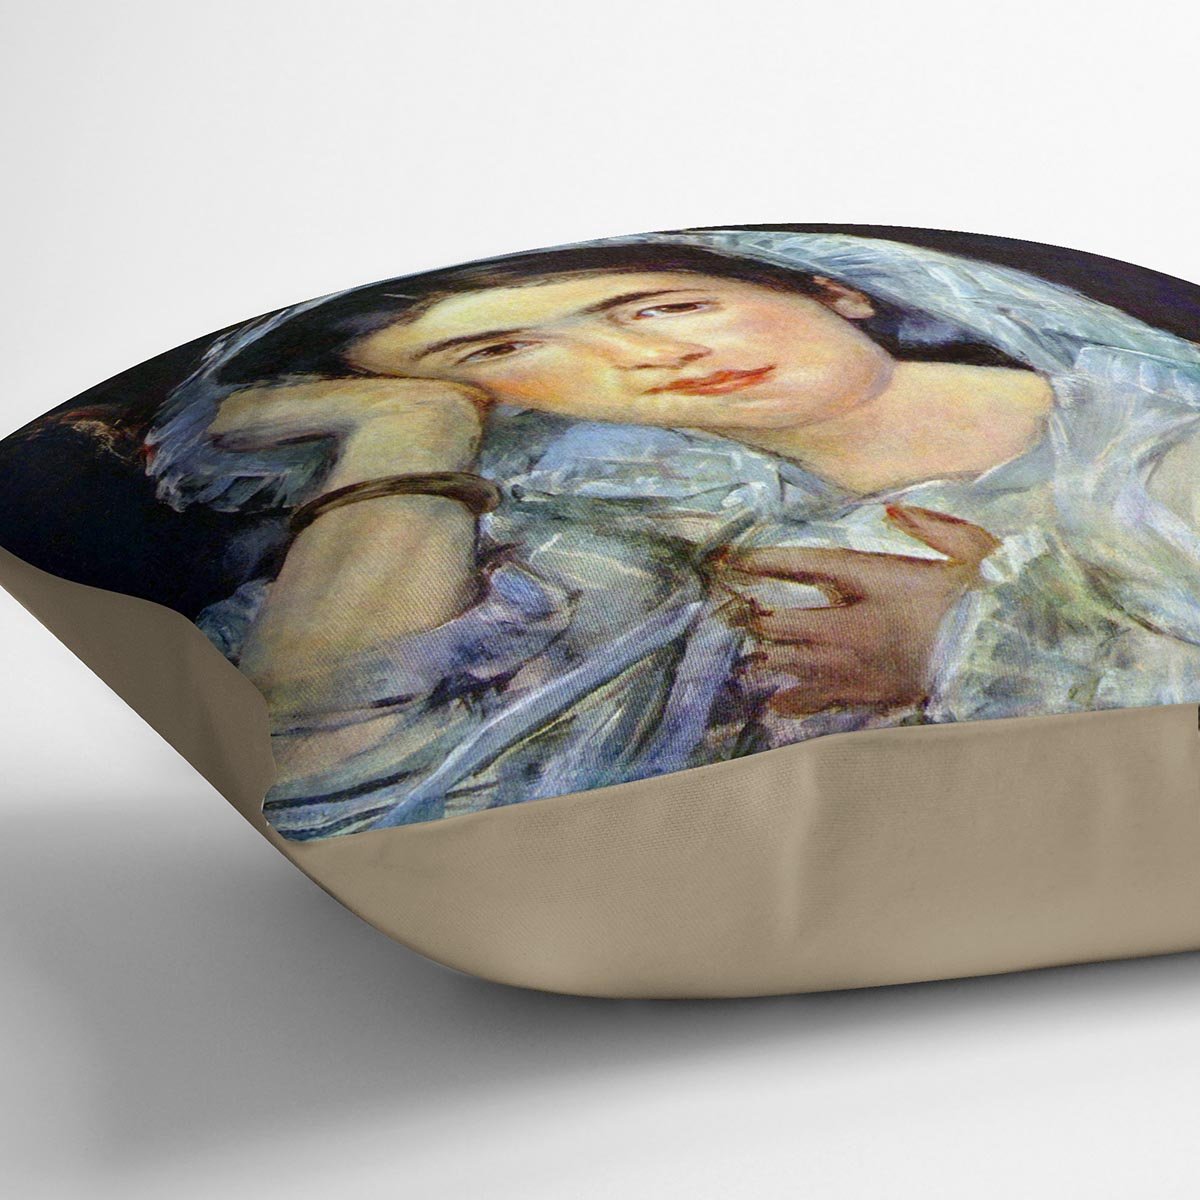 Portrait of Marguerite de Conflans by Manet Throw Pillow